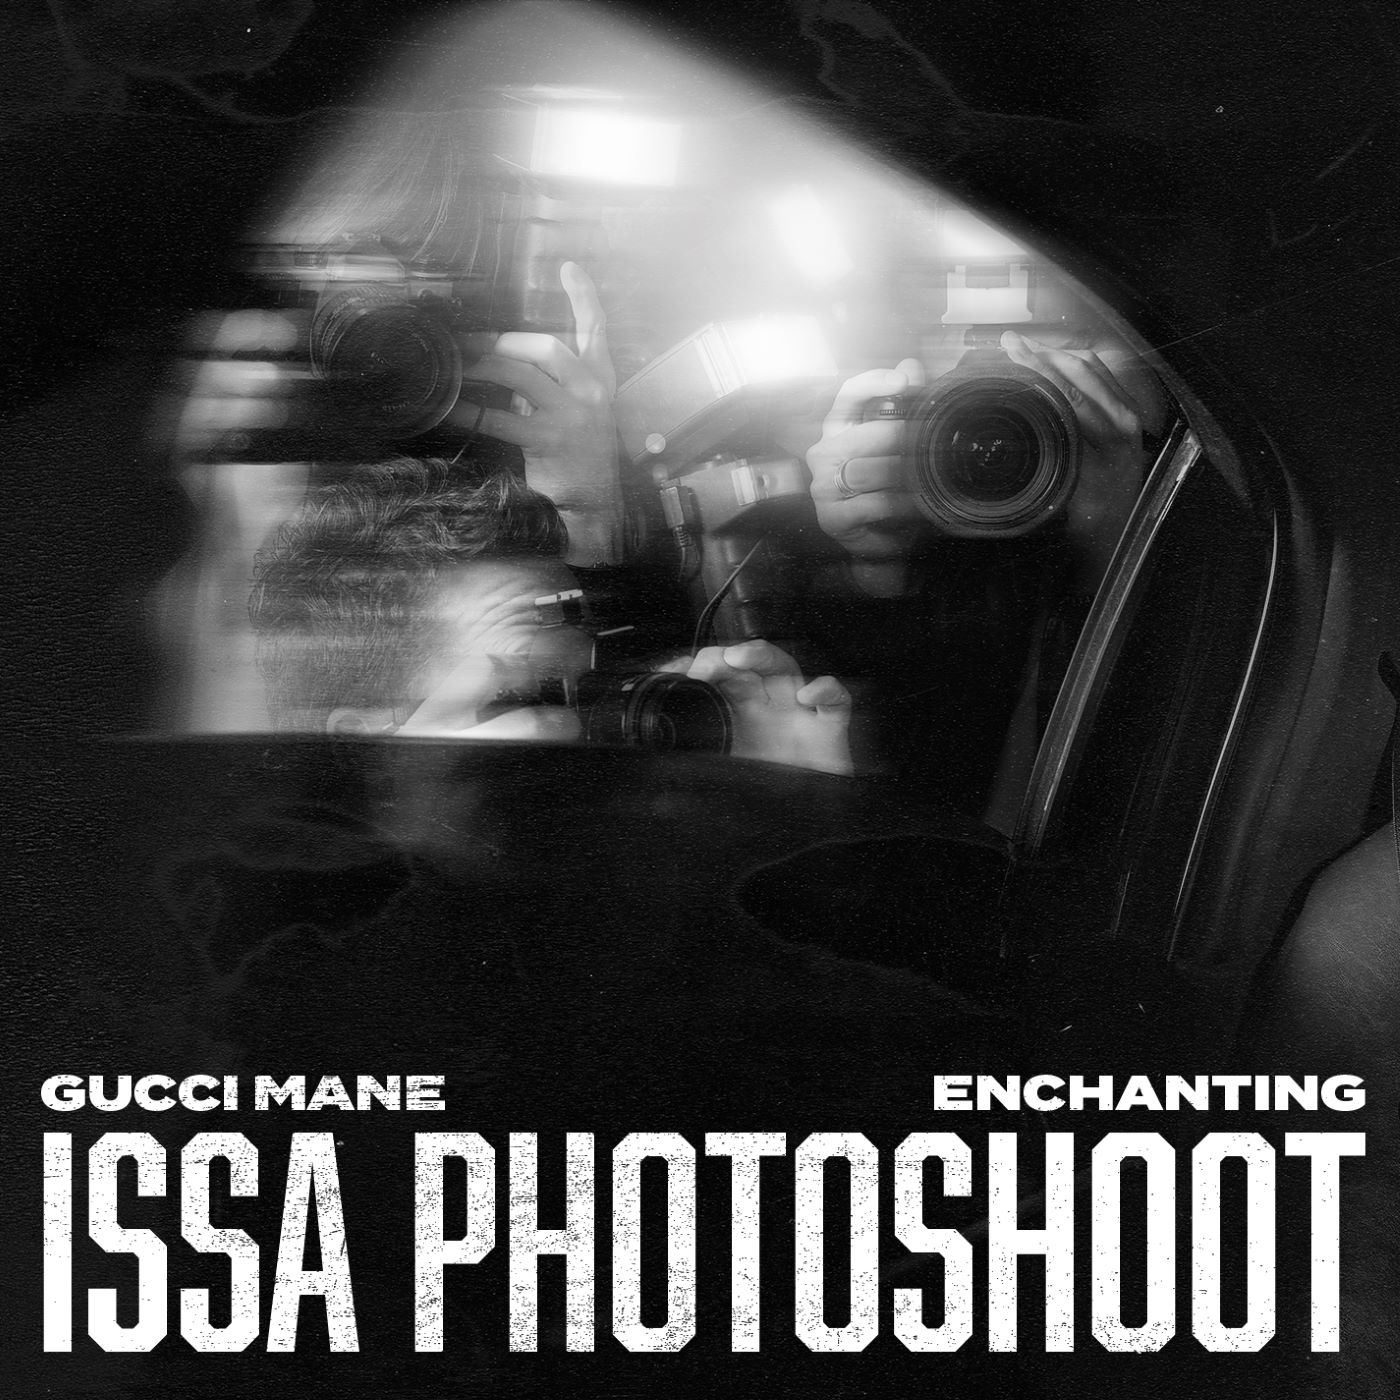 Enchanting, Gucci Mane - Issa Photoshoot album image